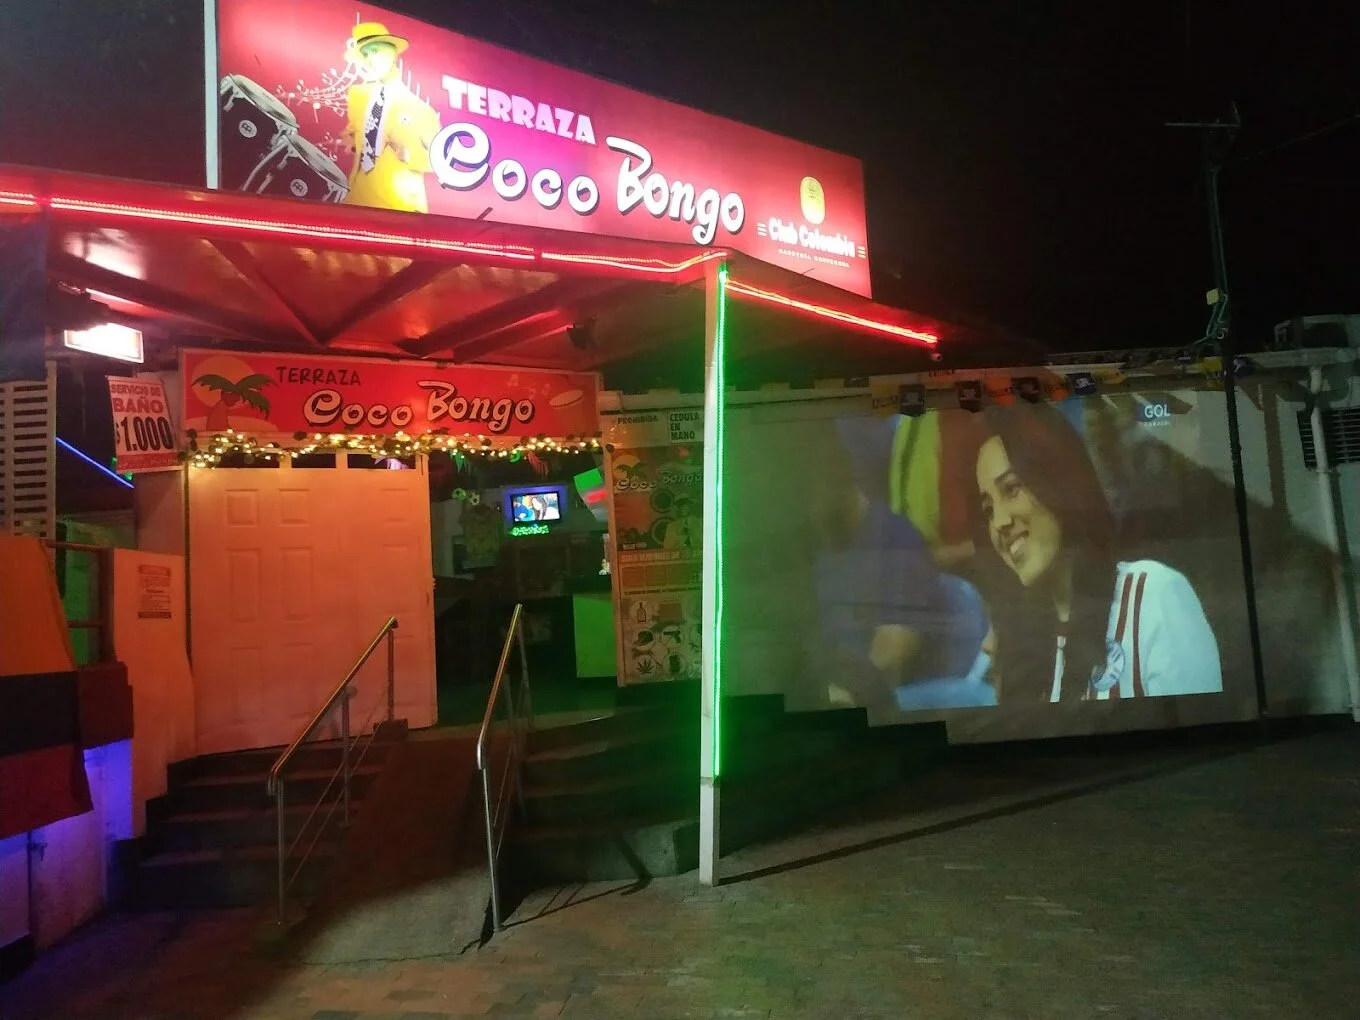 Discotecas-terraza-coco-bongo-32874